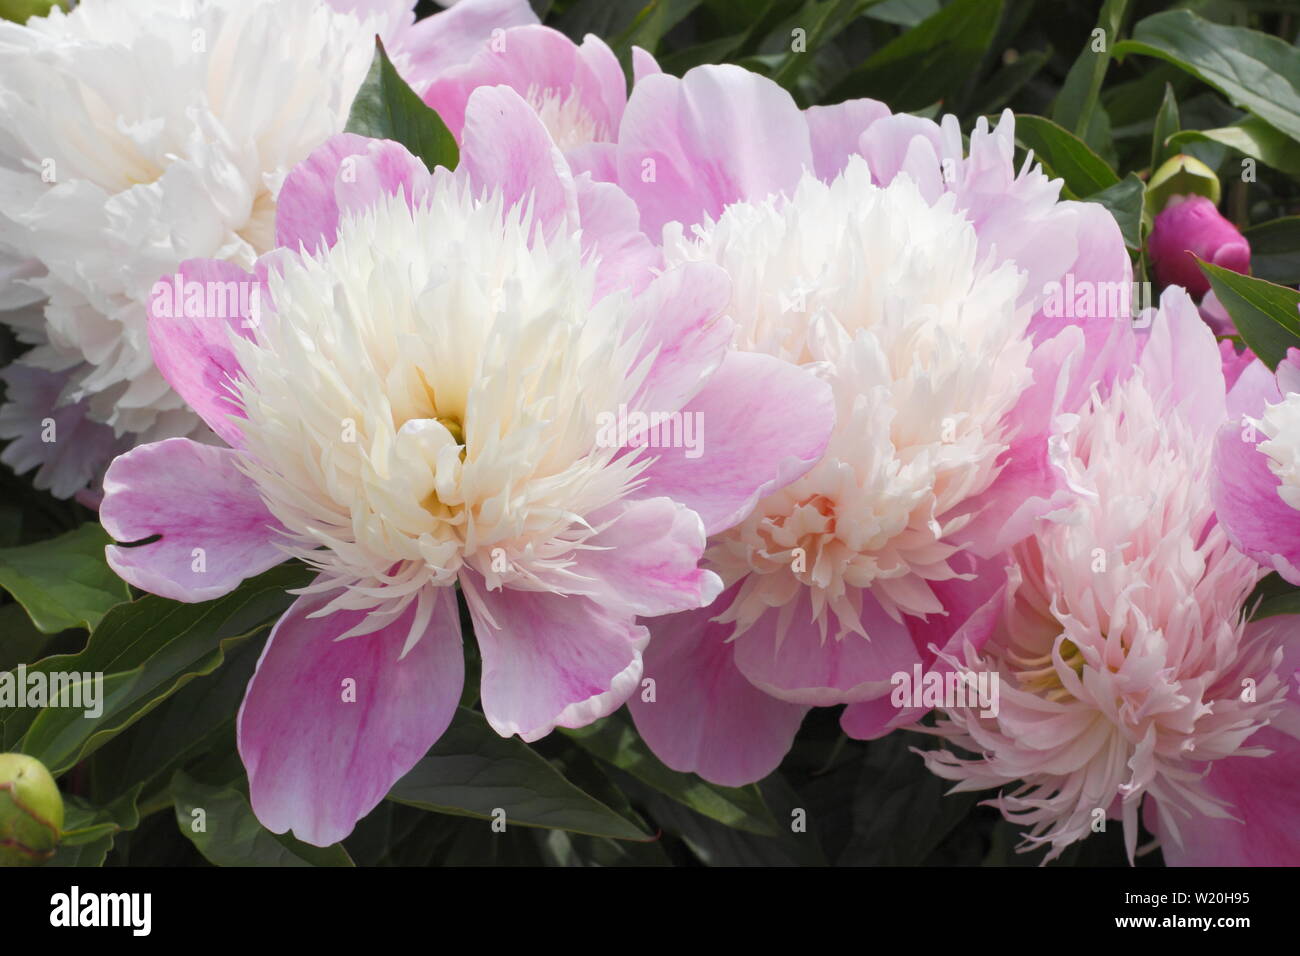 Paeonia lactiflora' Evening World'. Pivoine rose pâle Soirée 'World' la floraison dans un jardin border en juin - Royaume-Uni Banque D'Images